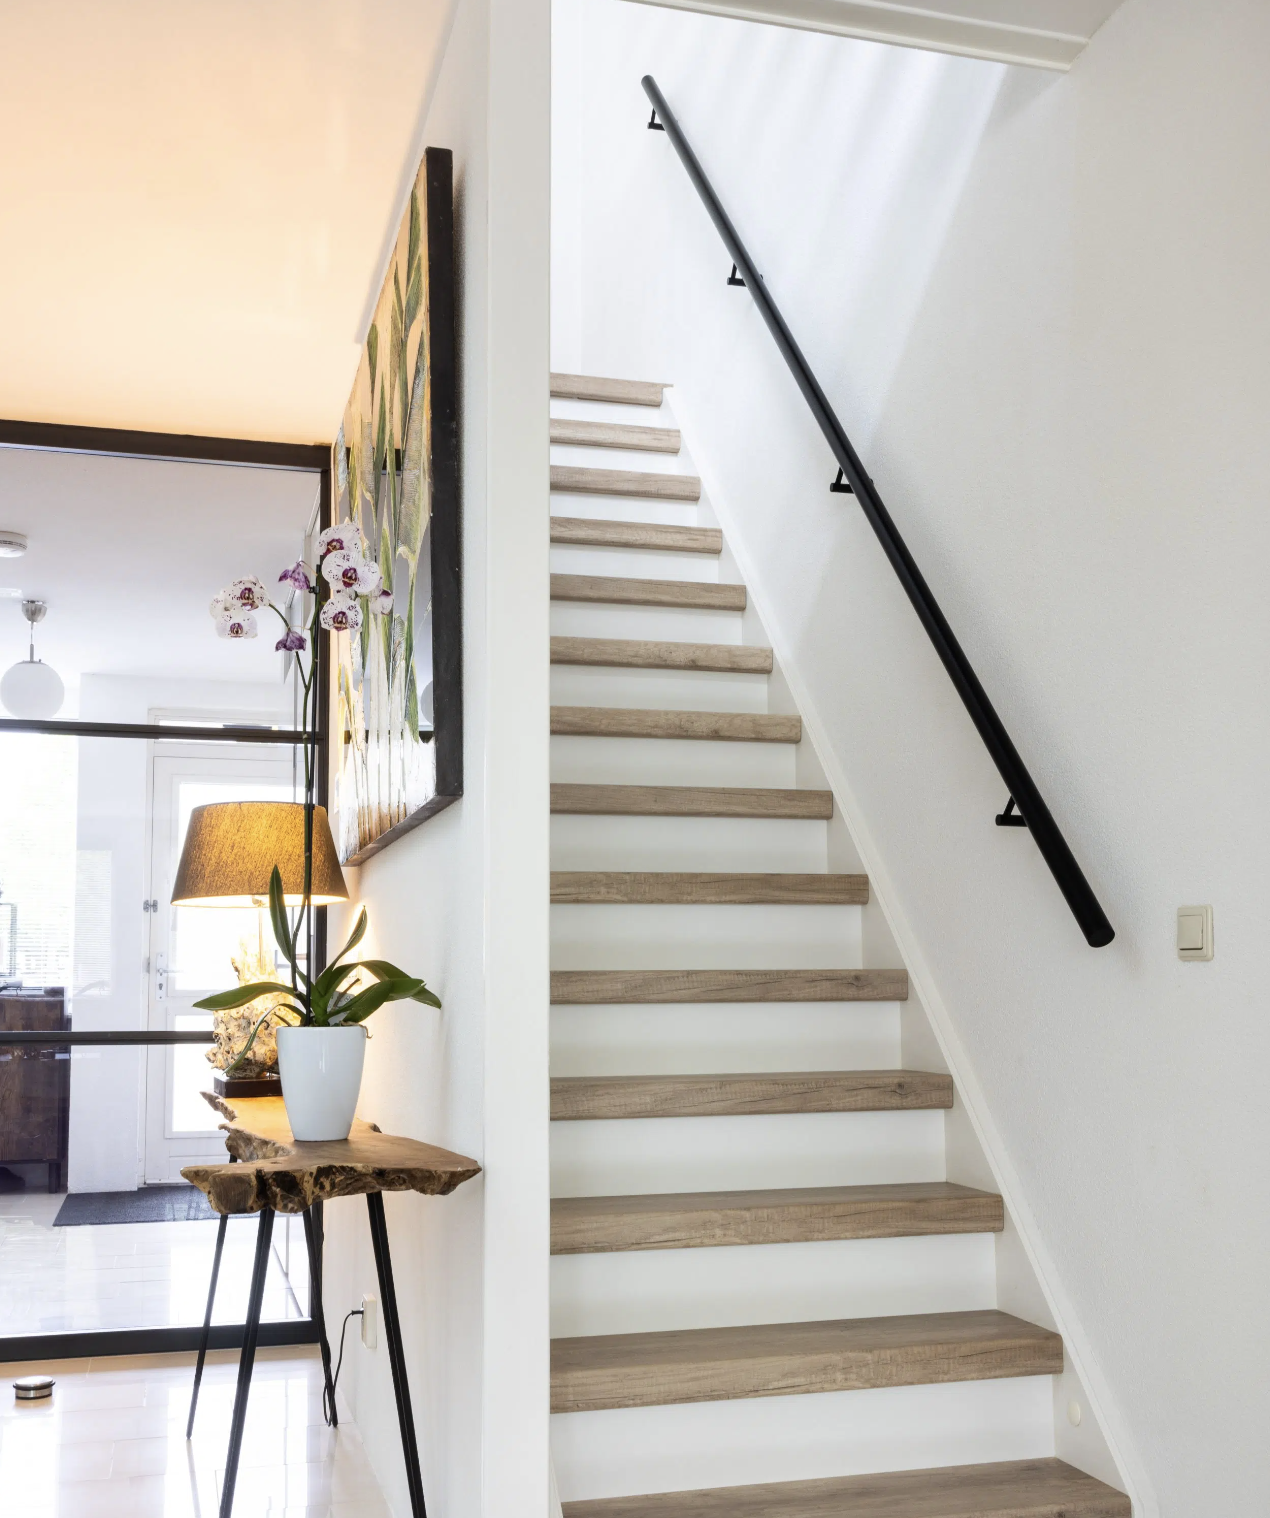 Een stijlvolle trap? Een snelle traprenovatie voor een moderne verbinding tussen twee verdiepingen.